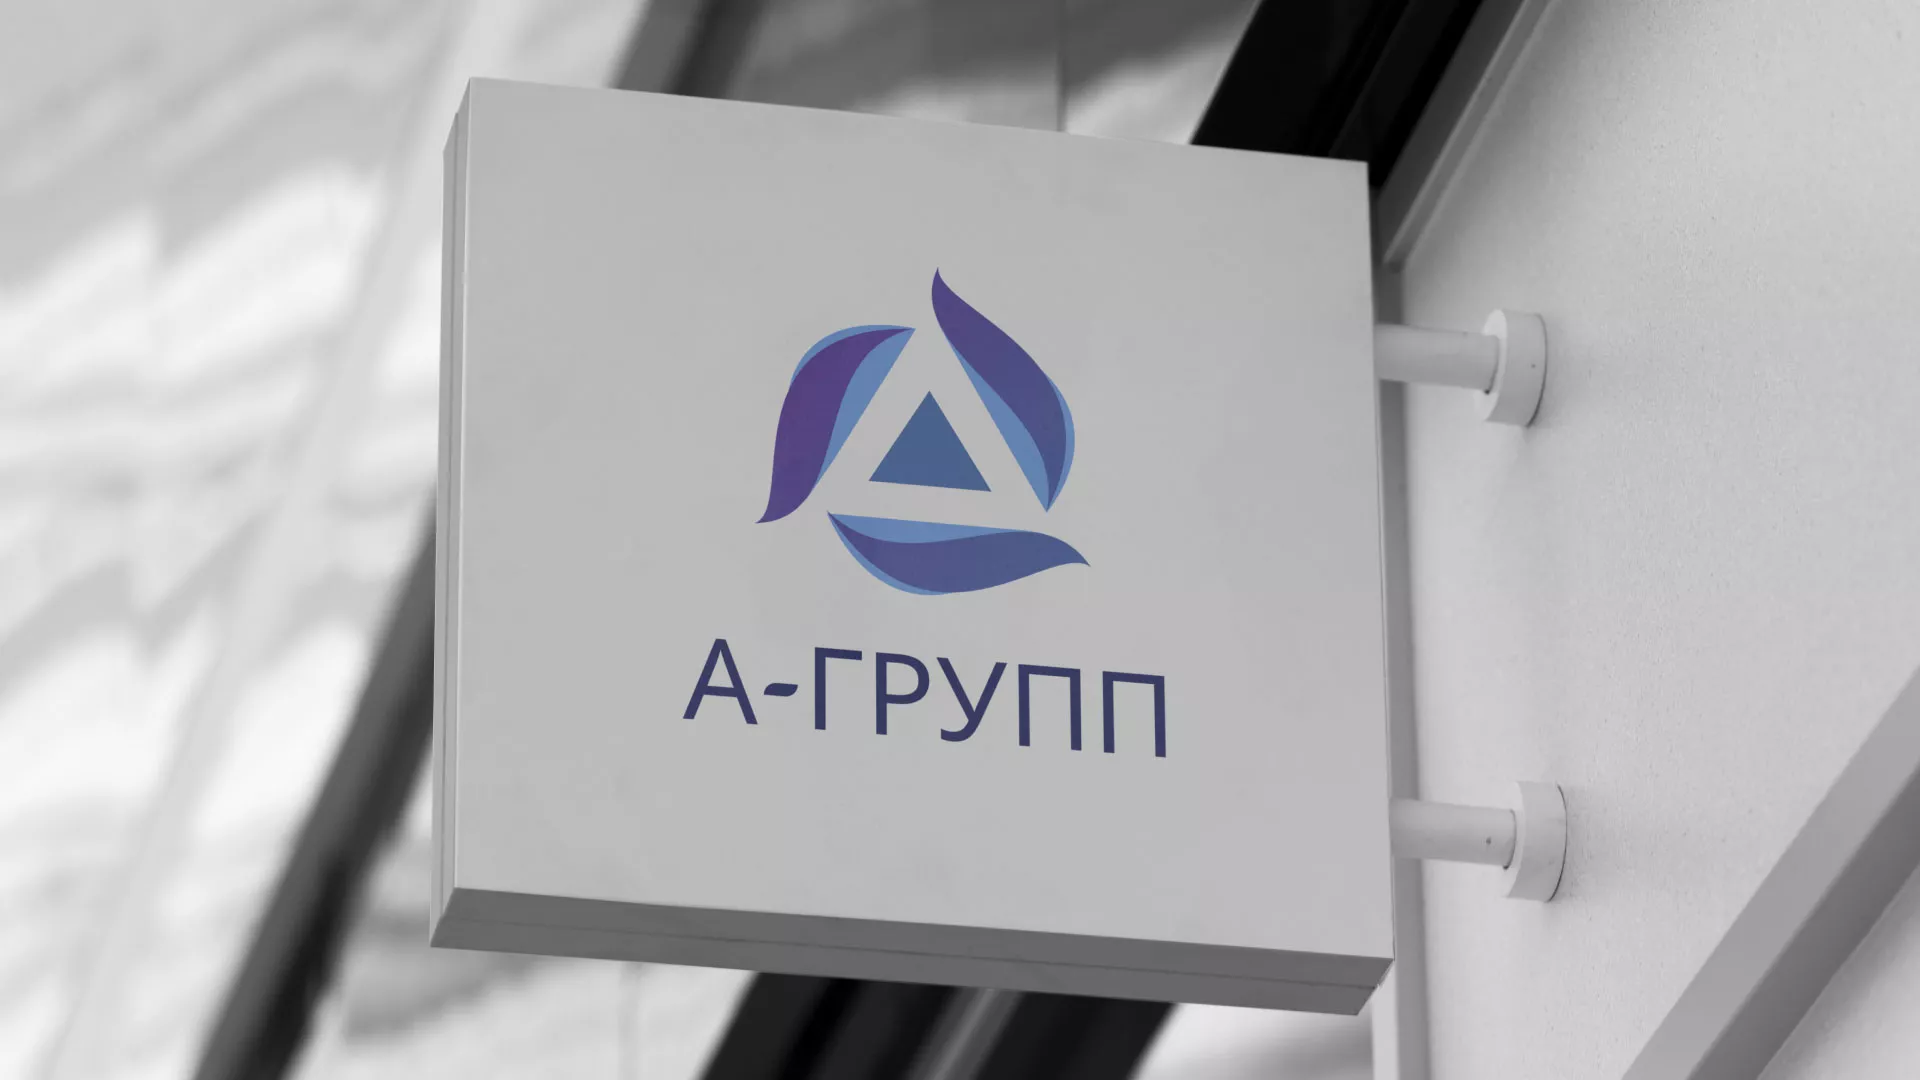 Создание логотипа компании «А-ГРУПП» в Петрове Вале